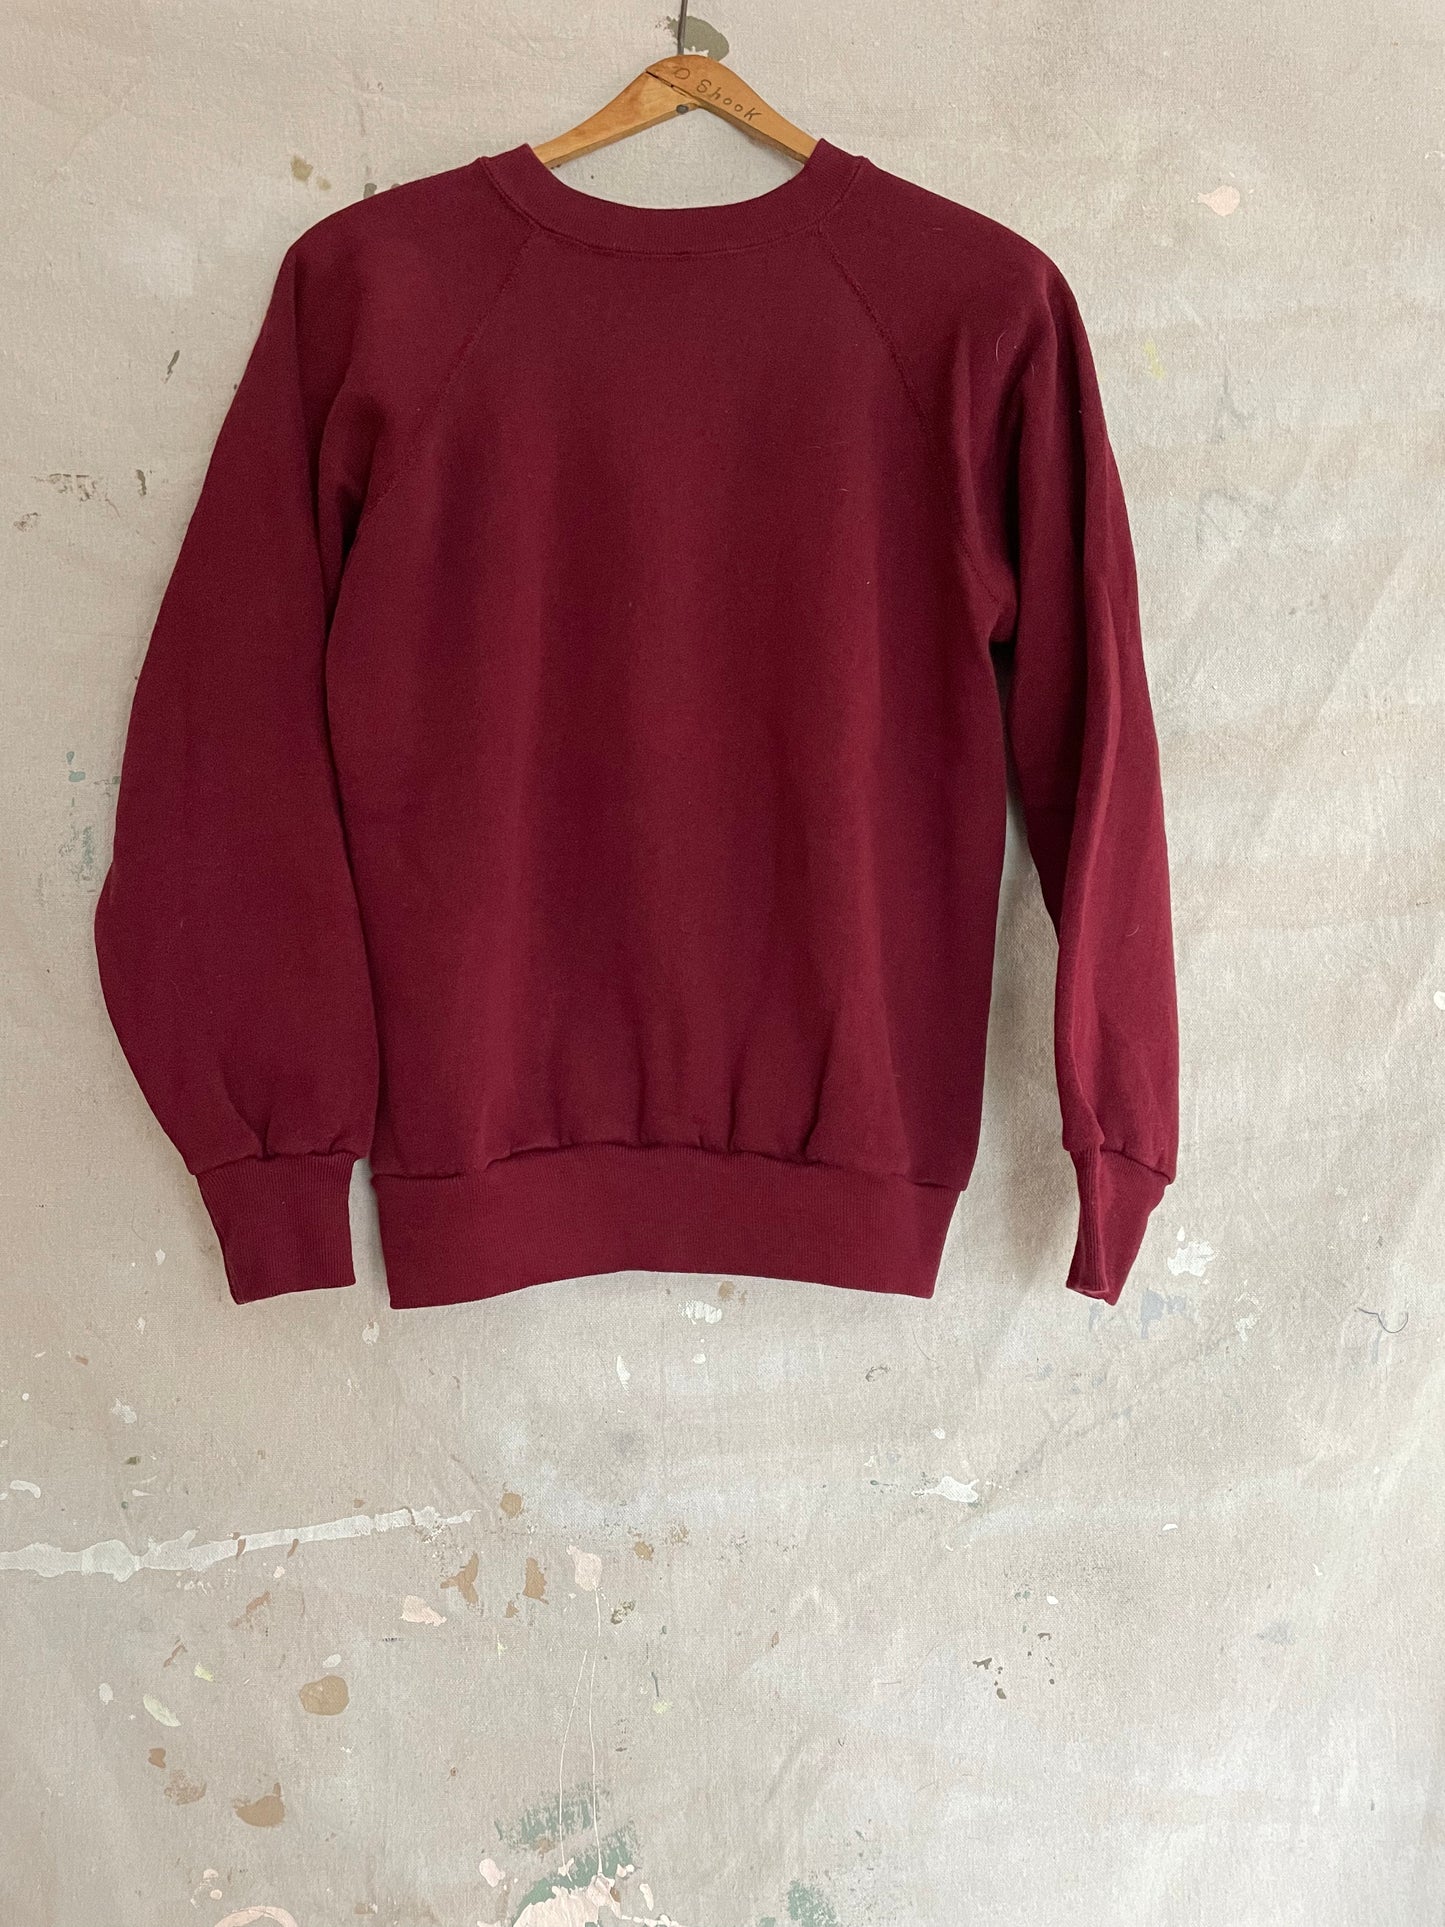 80s Blank Maroon Sweatshirt